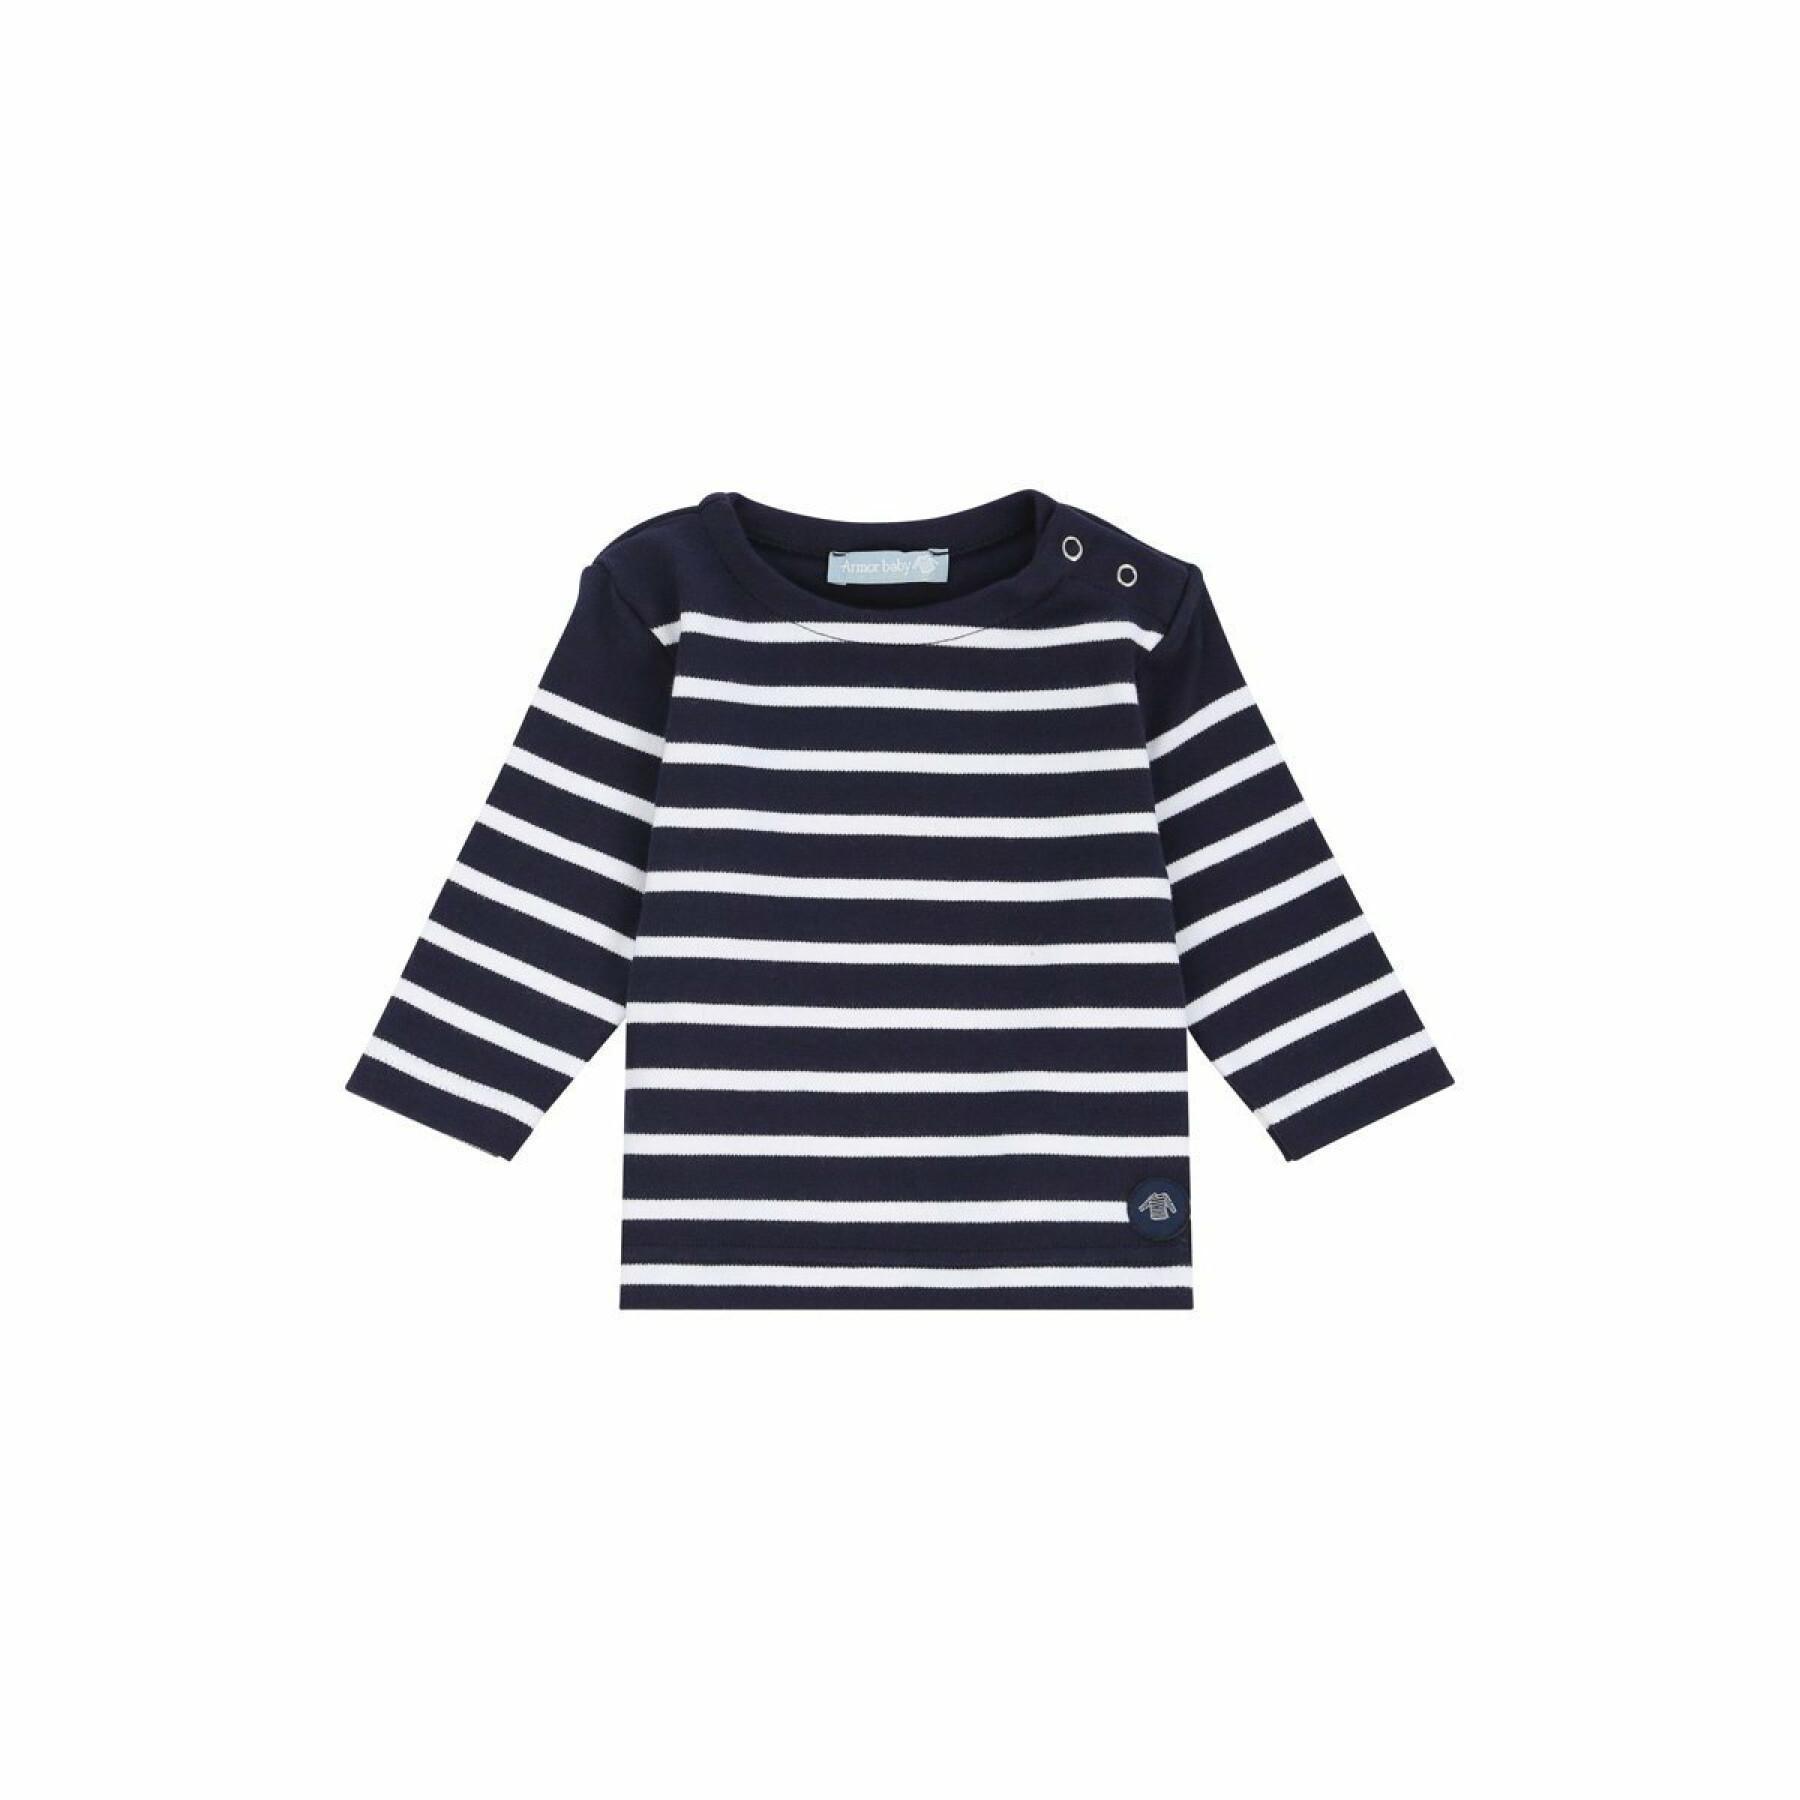 Camiseta de bebê marinheiro Armor-Lux amiral